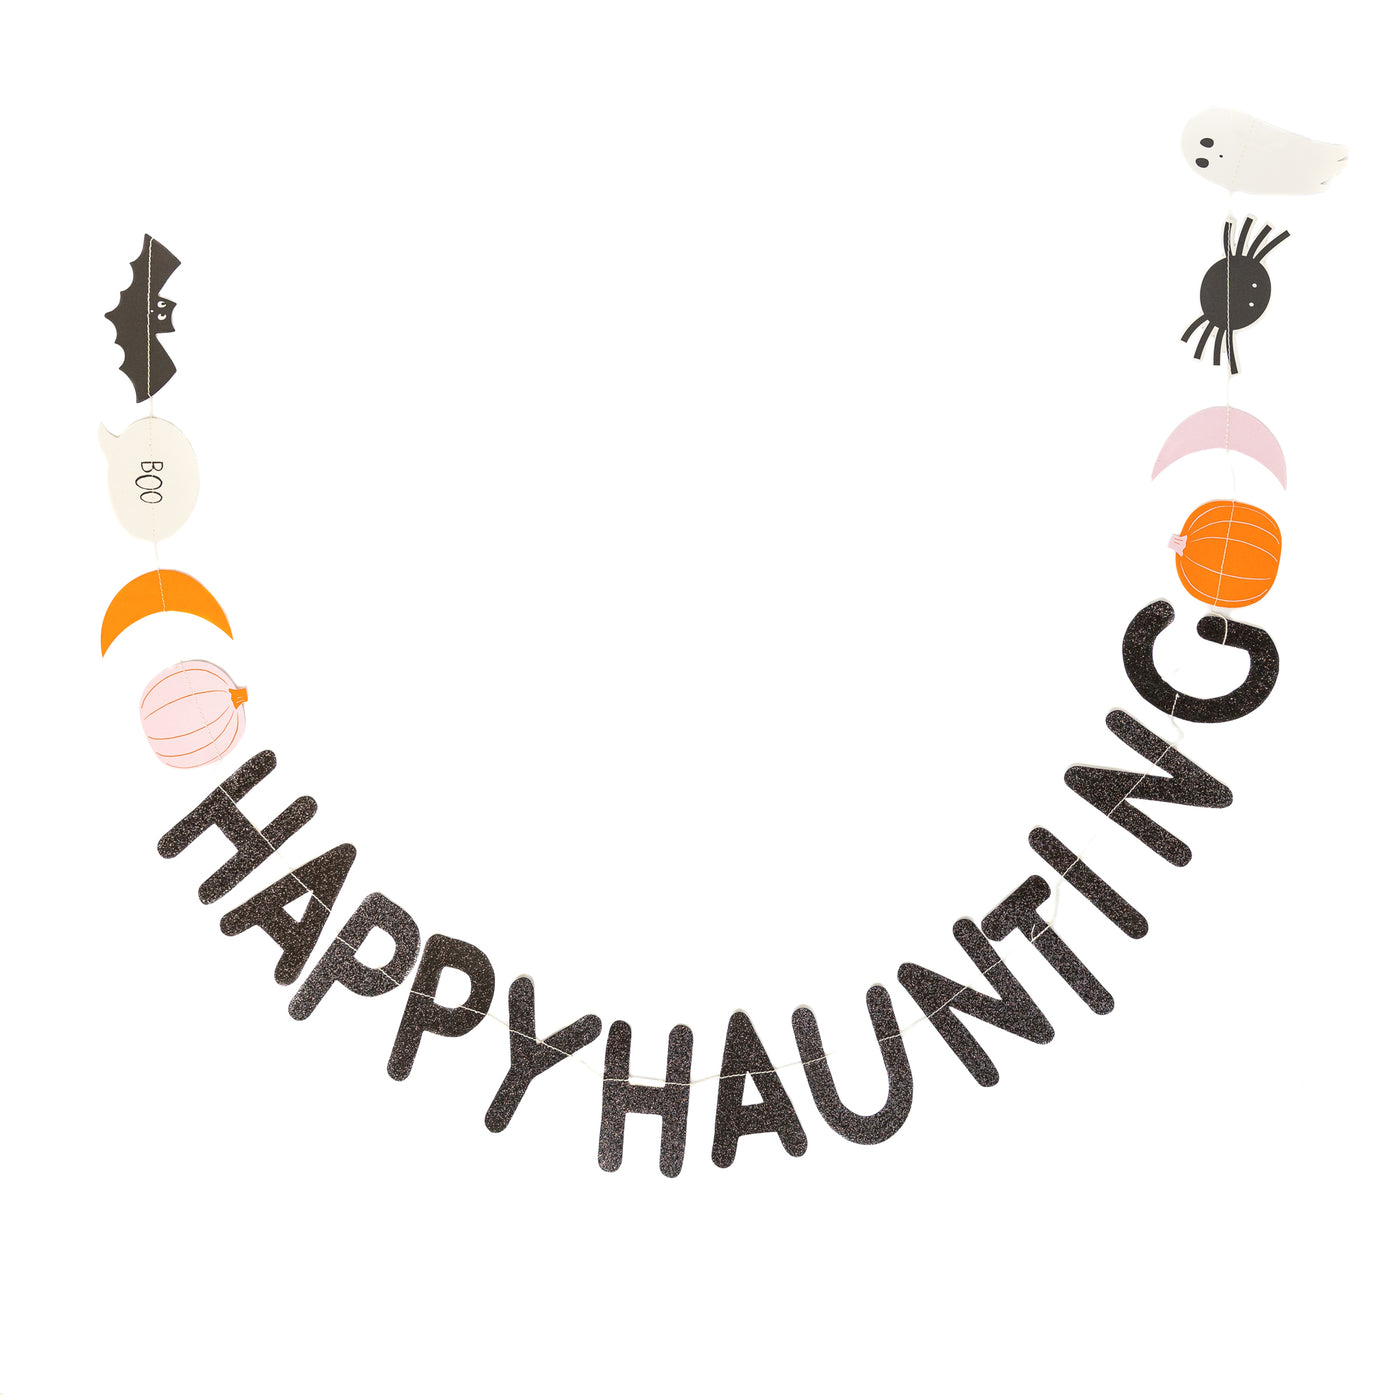 Happy Haunting Halloween Banner